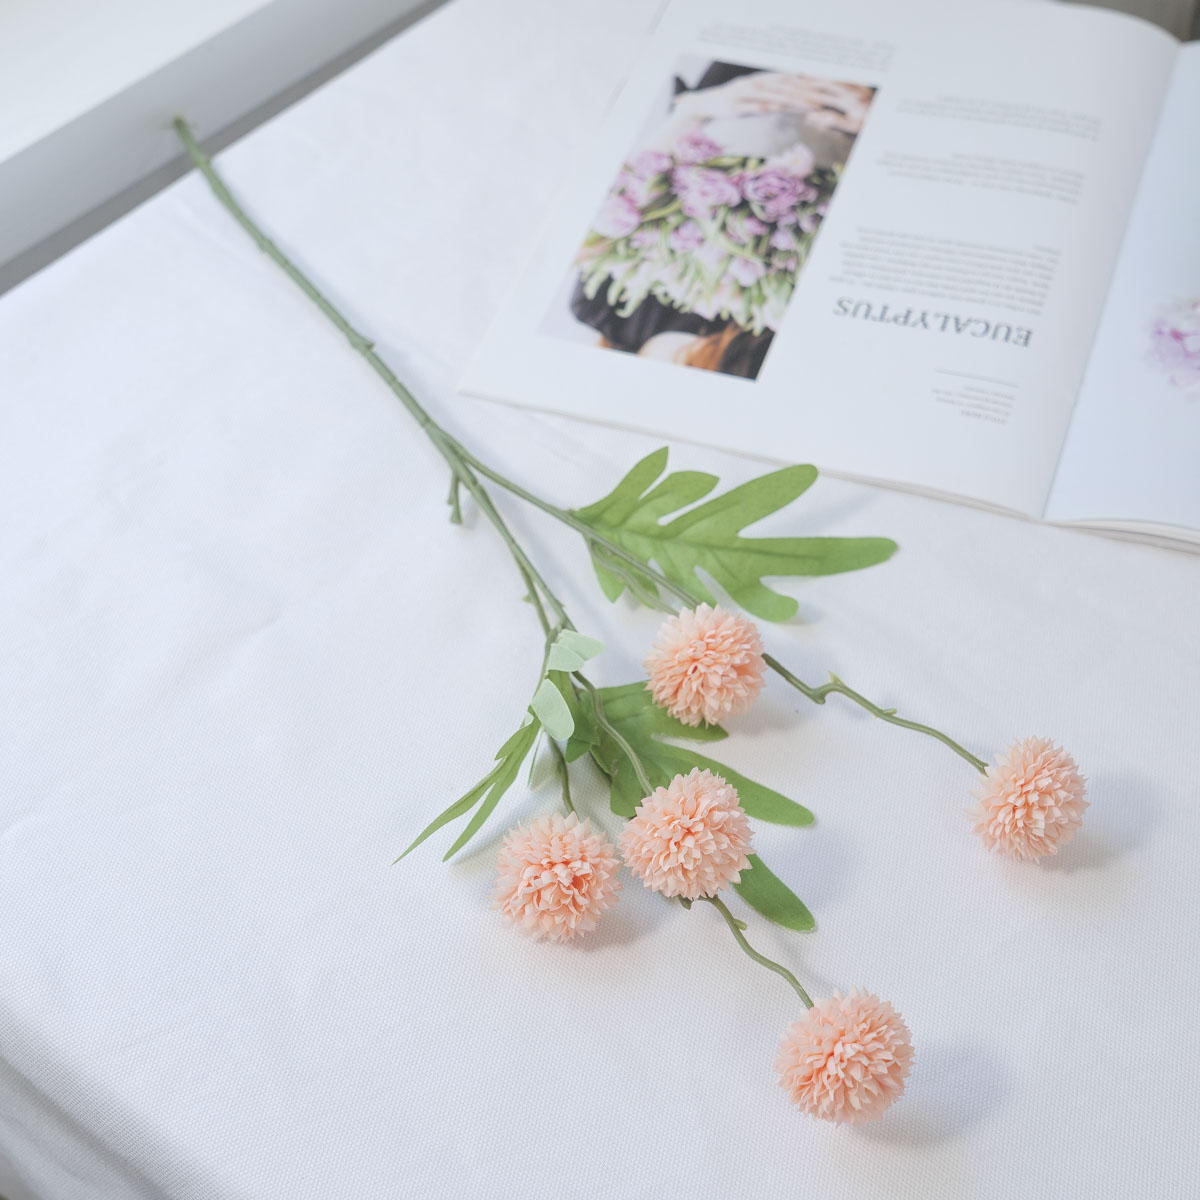 실크플라워 미니 폼폼꽃 알리움 조화 꽃 가지 52cm 피치 테이블에 놓은 사진